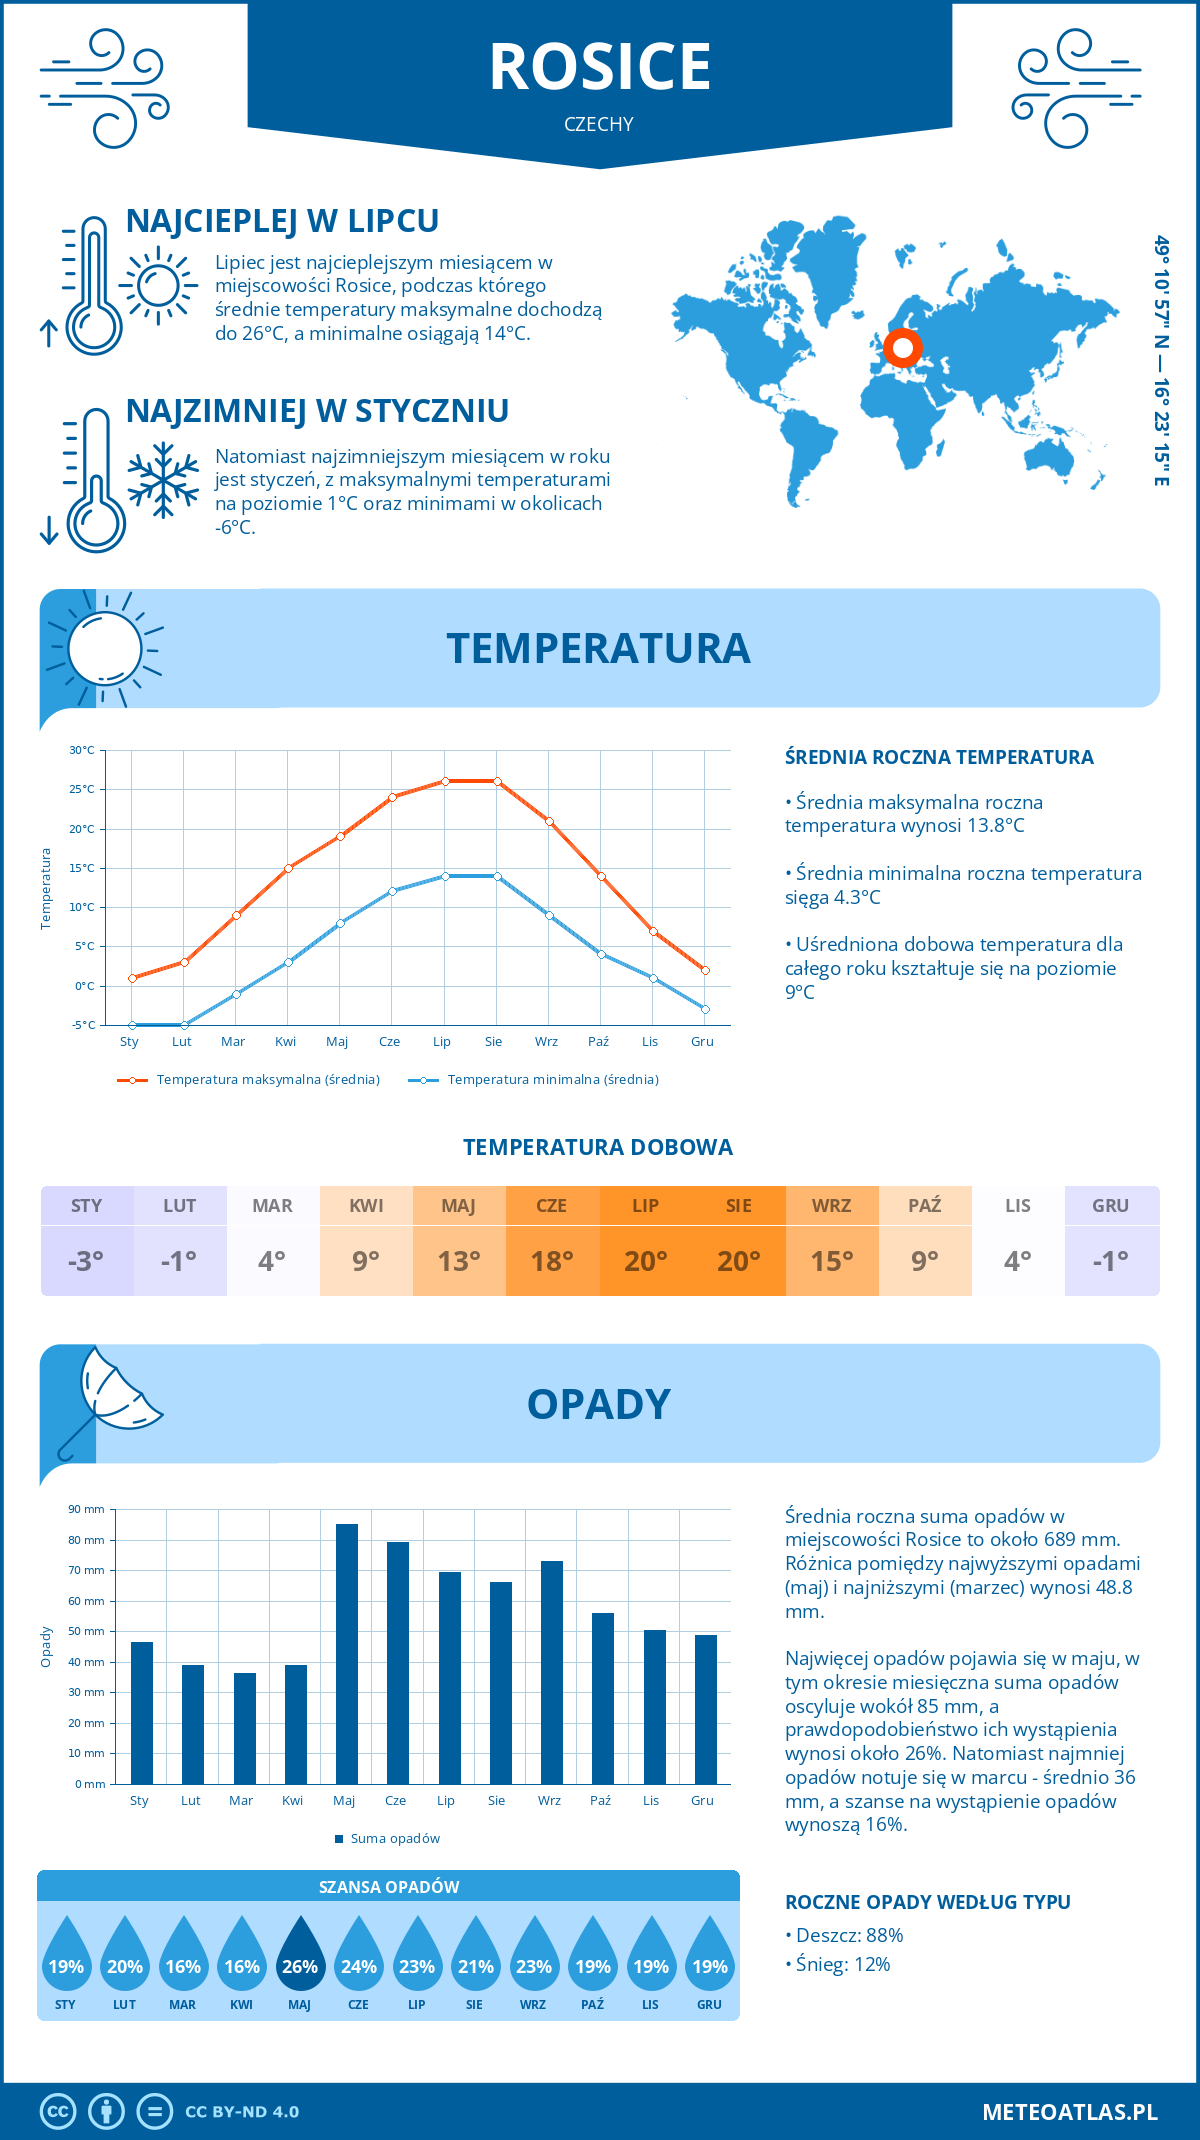 Pogoda Rosice (Czechy). Temperatura oraz opady.